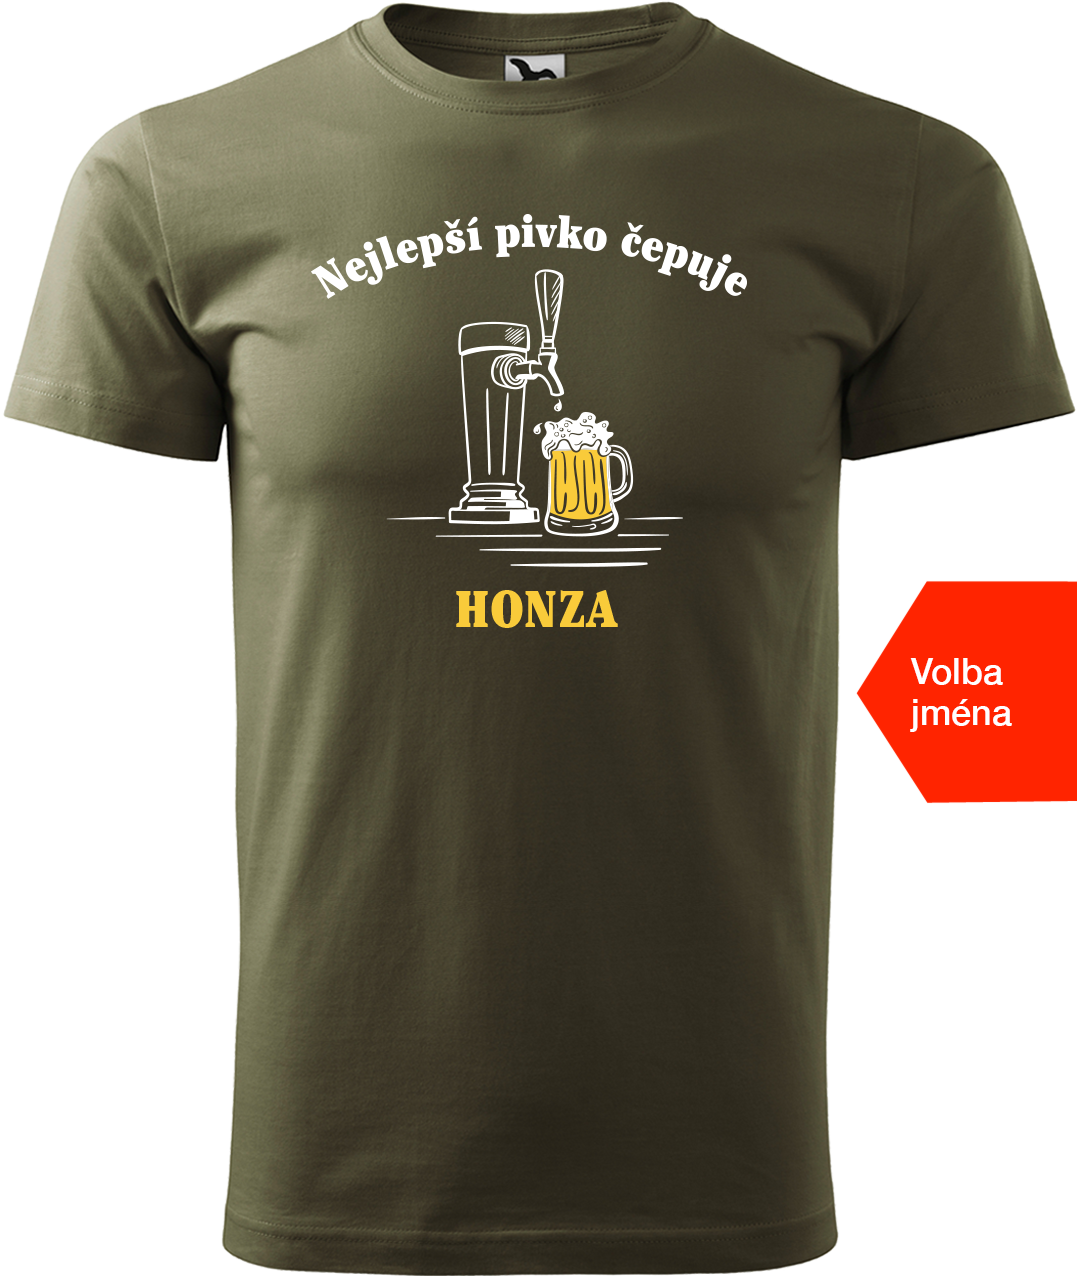 Pivní tričko - Nejlepší pivko čepuje + jméno Velikost: 3XL, Barva: Military (69)